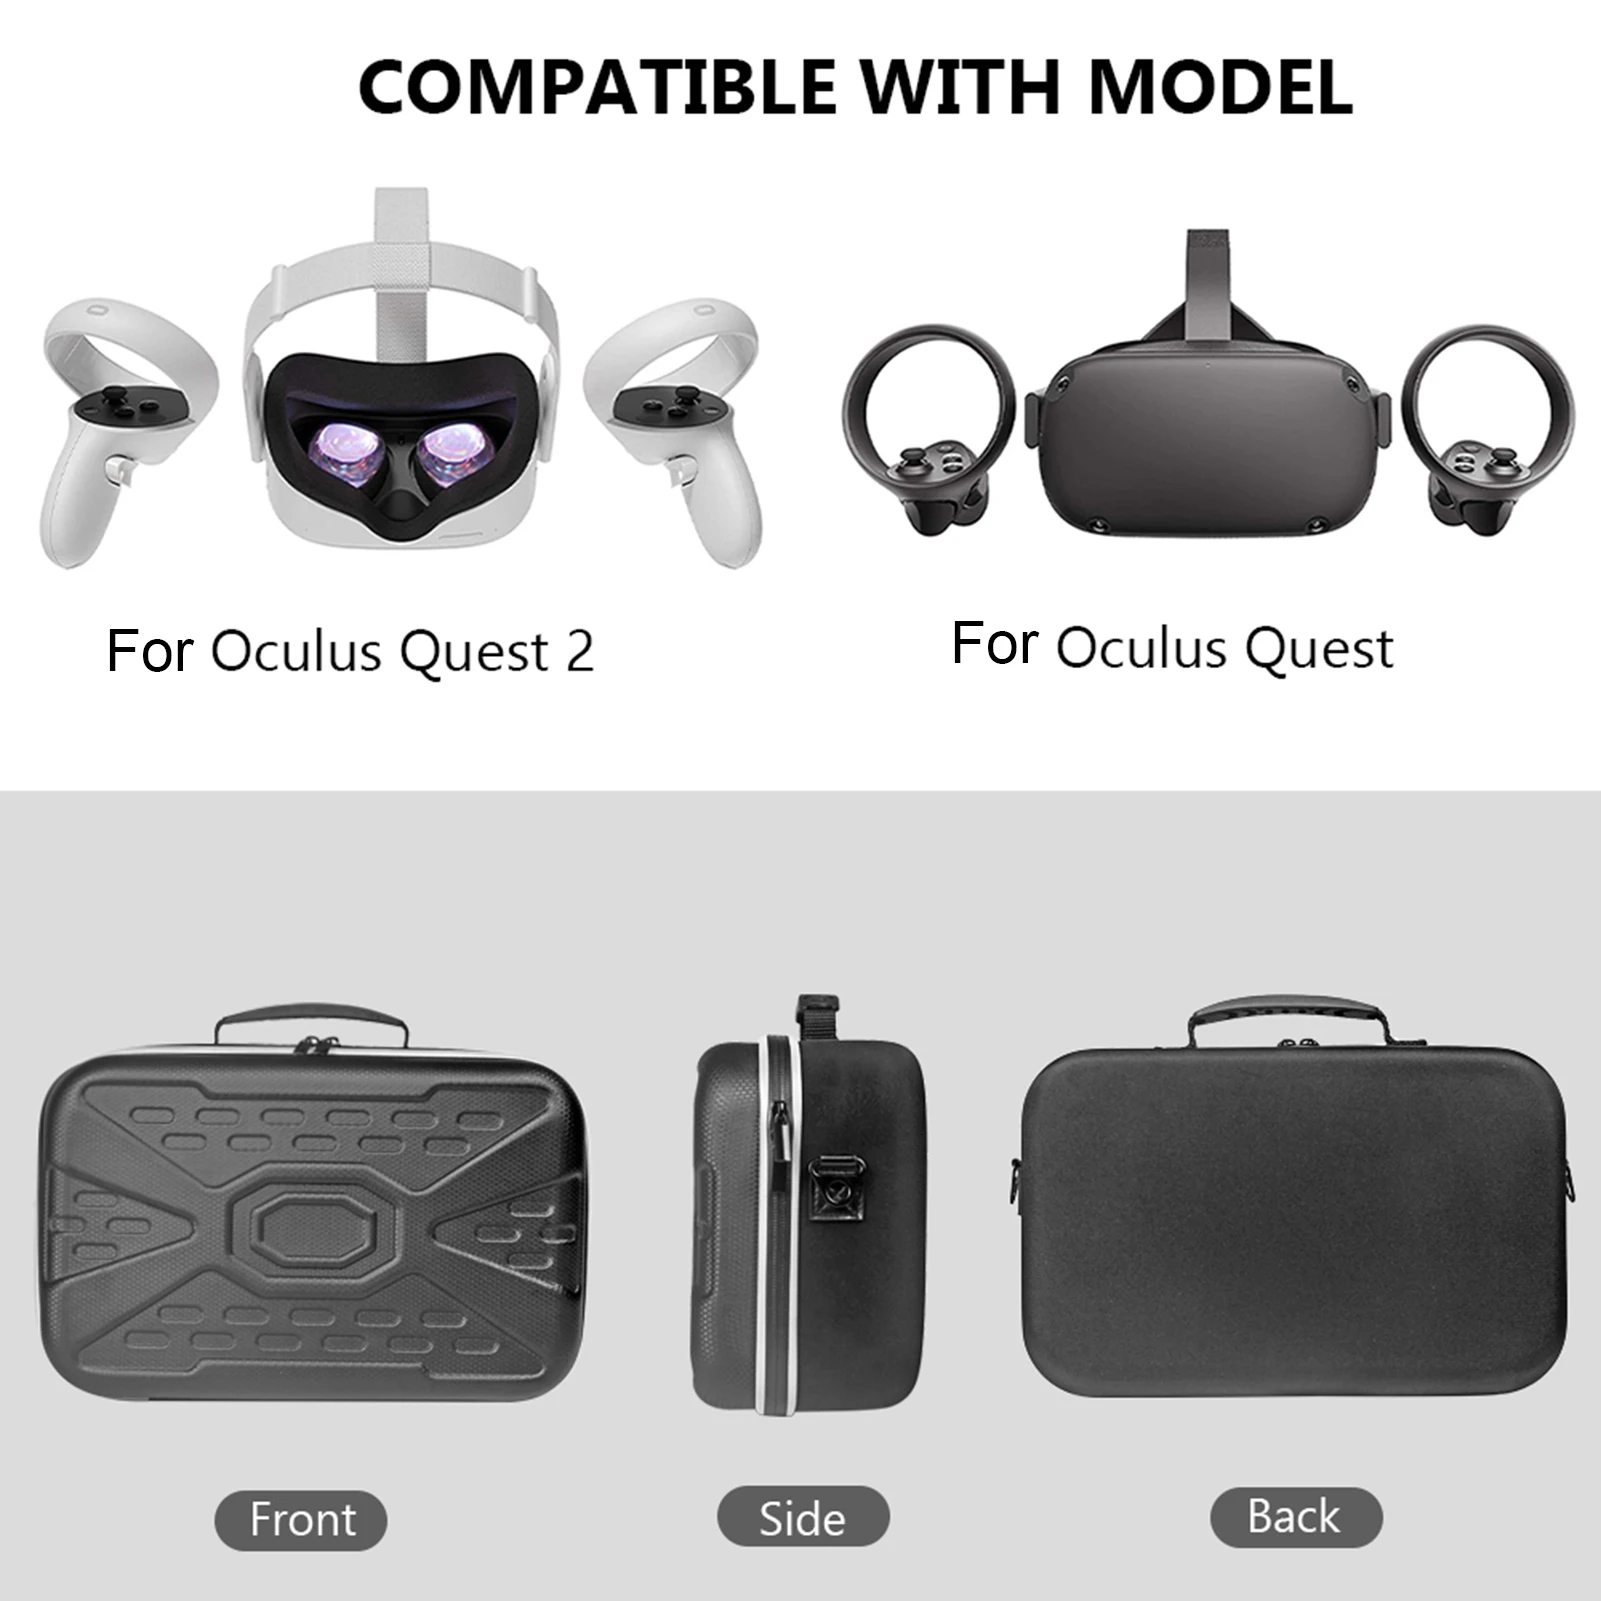 Hårdt Rejse Beskytte Max opbevaringspose EVA Regnskabsmæssige Dække Sagen For Oculus Quest 2/Oculus Søgen Alt-i-én VR Og Tilbehør